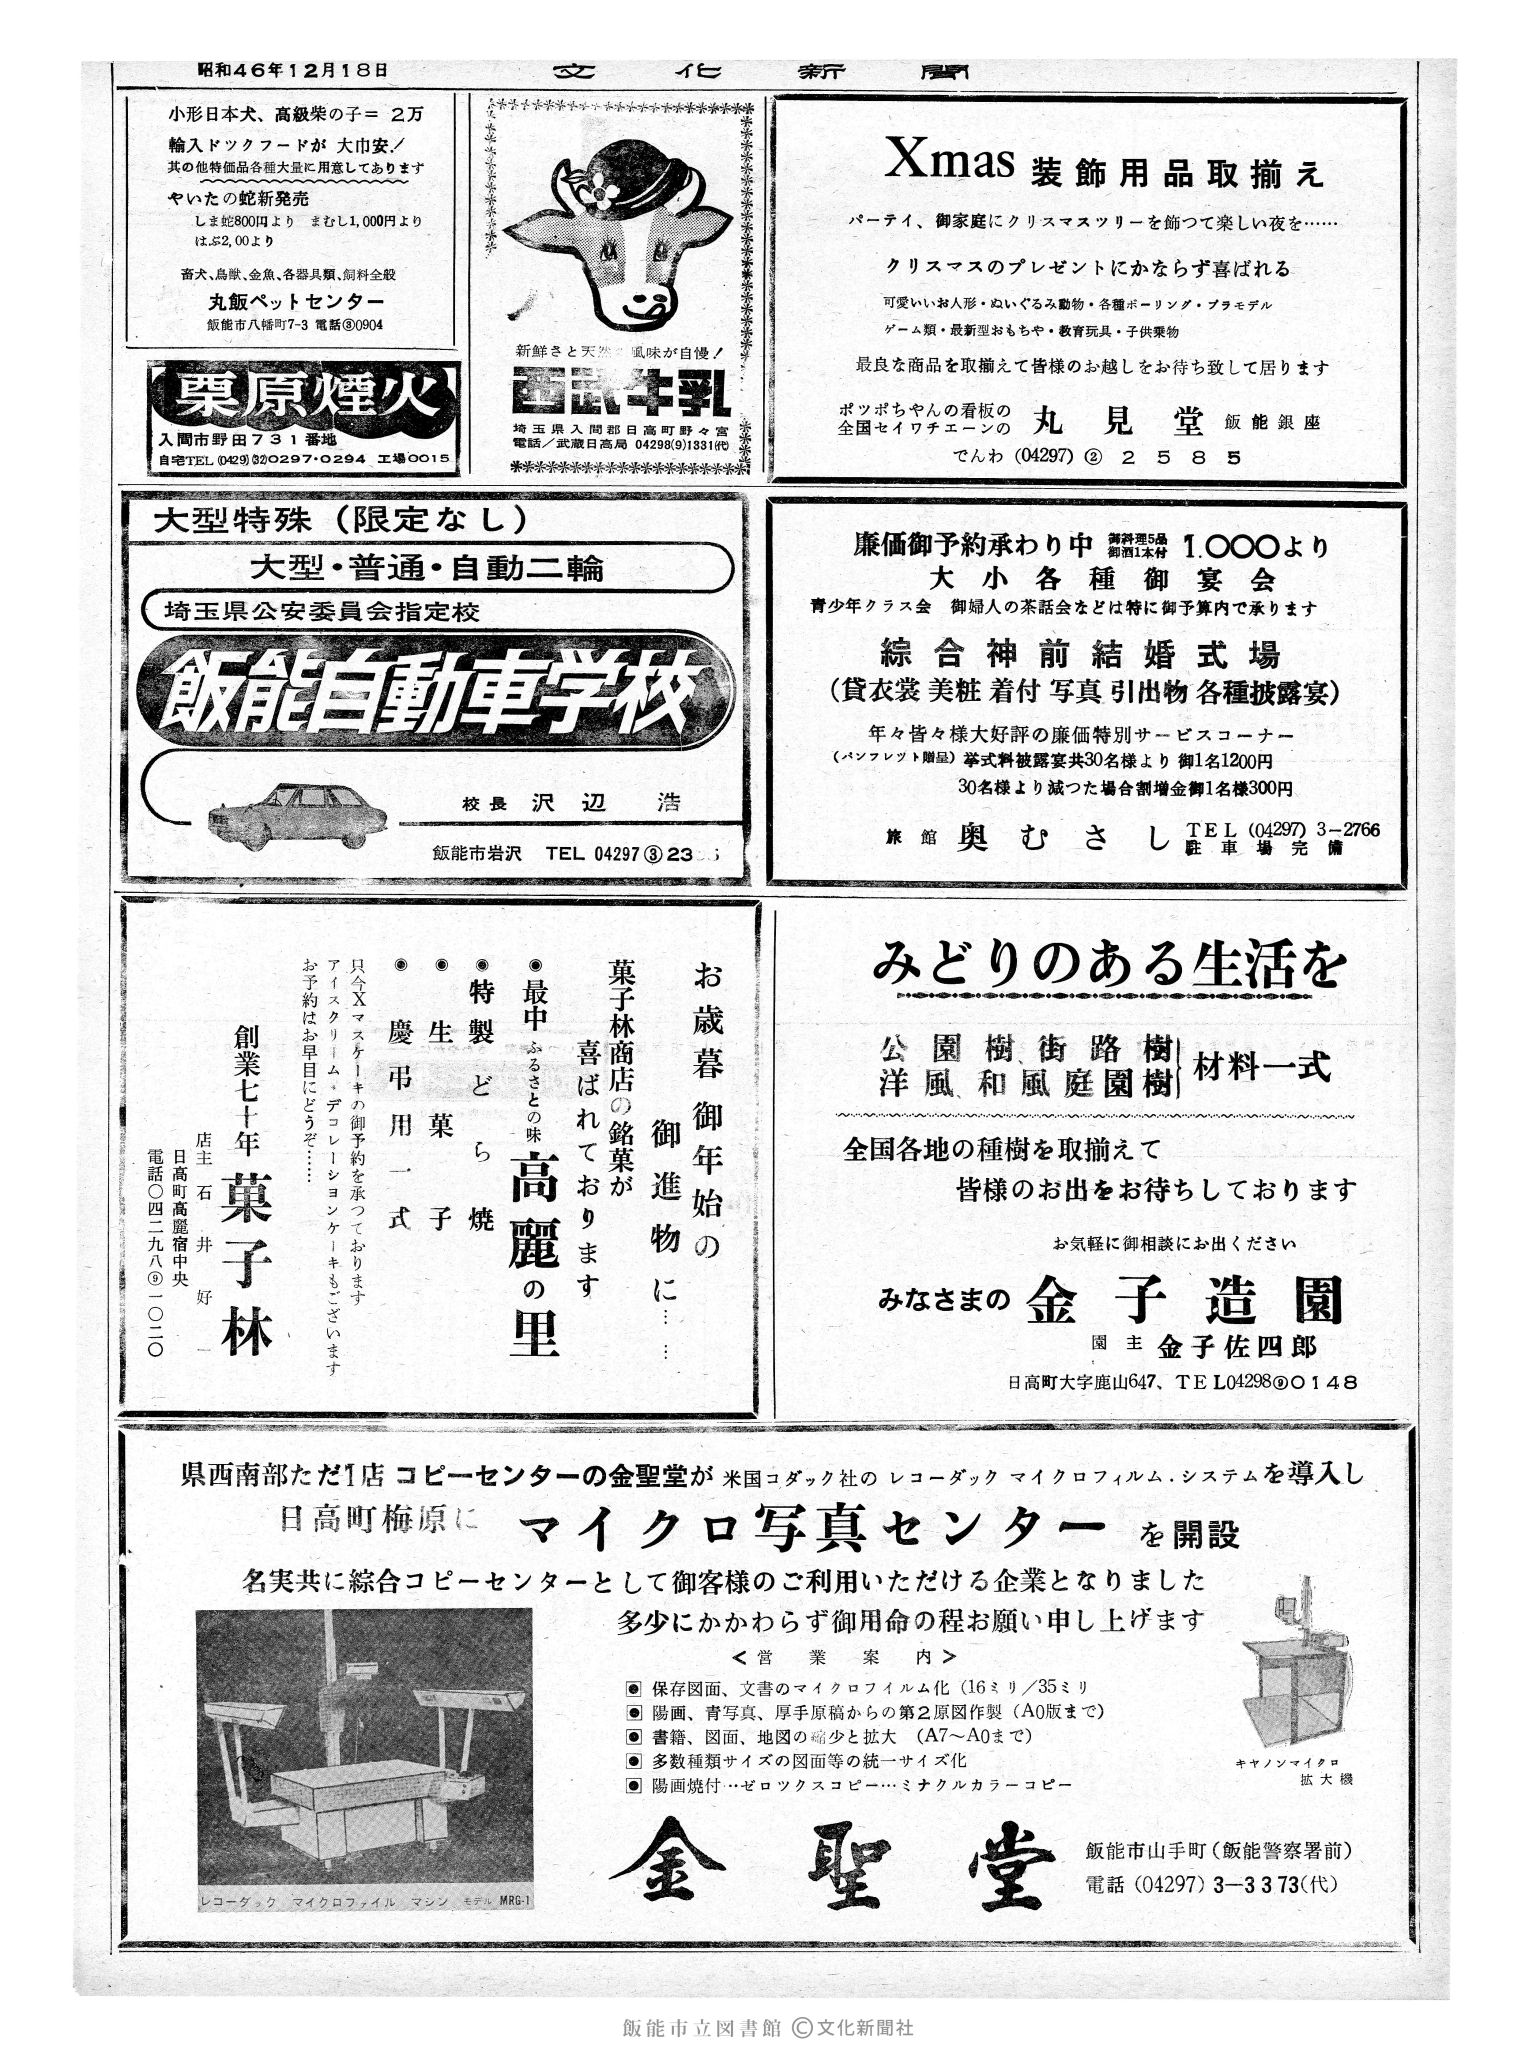 昭和46年12月18日2面 (第7123号) 広告ページ